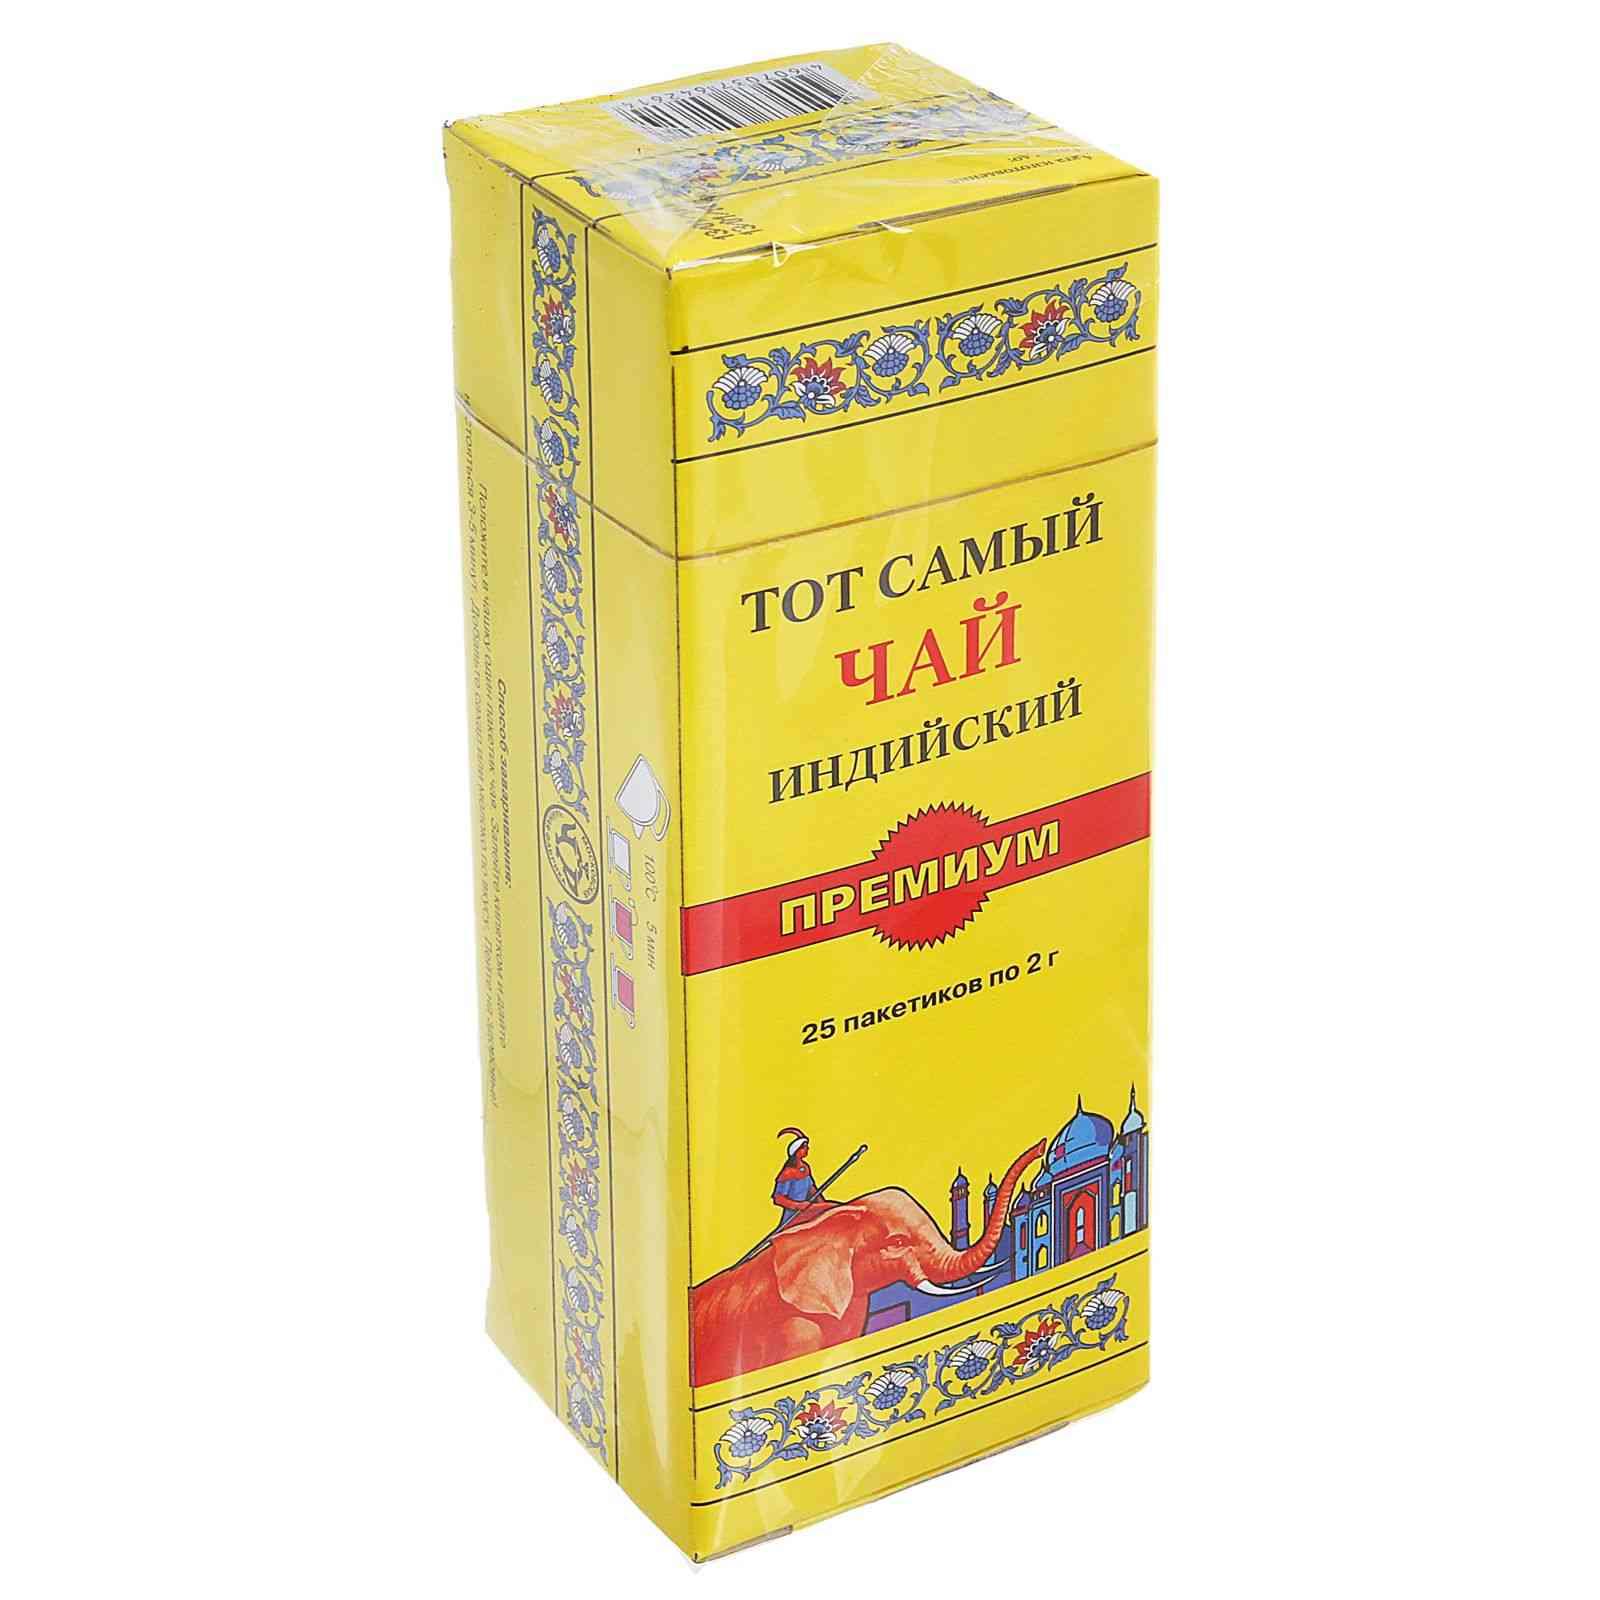 Чай Тот Самый Премиум черный 25 пакетиков, 50 гр., картон